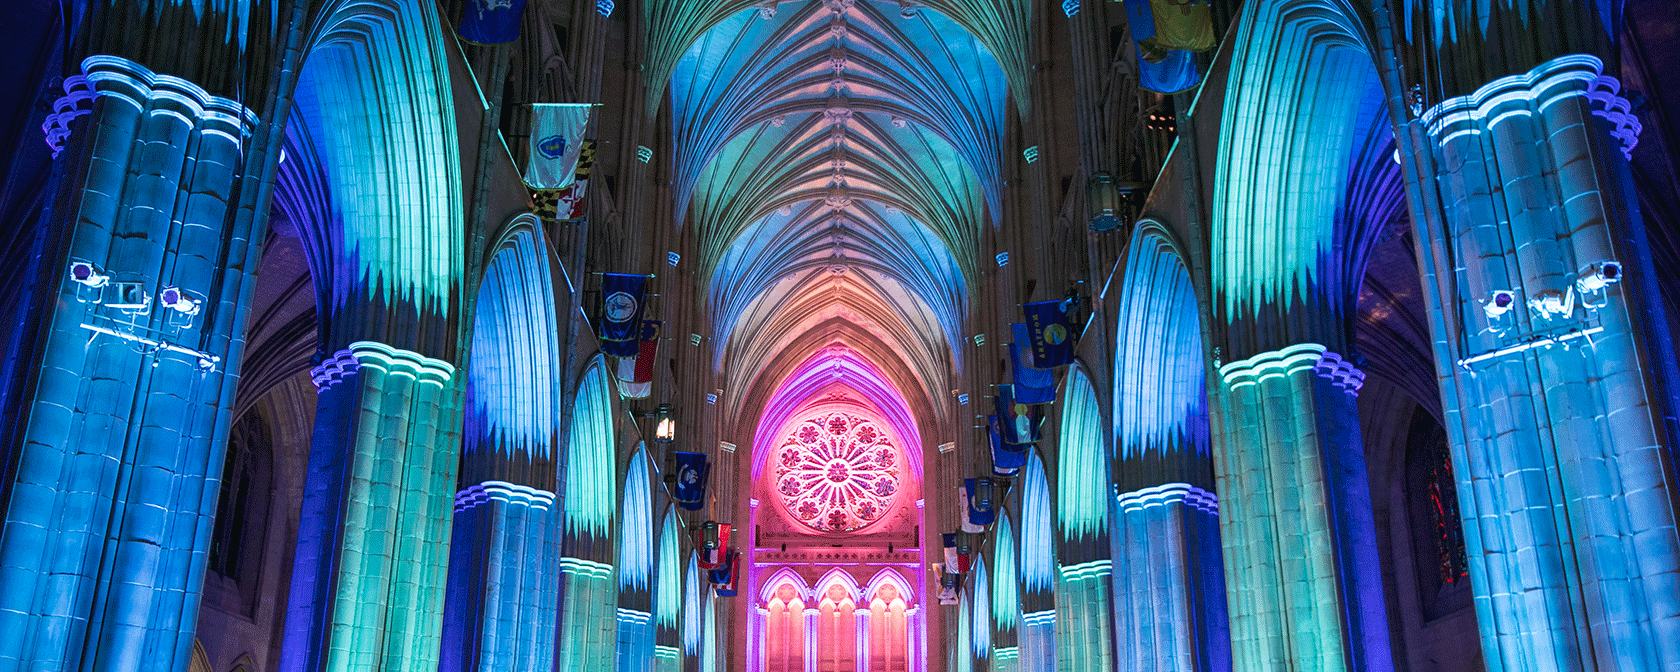 Die Kathedrale erleuchtet im Inneren mit blauen und rosa Lichtern (Bild: Jason Dixson)